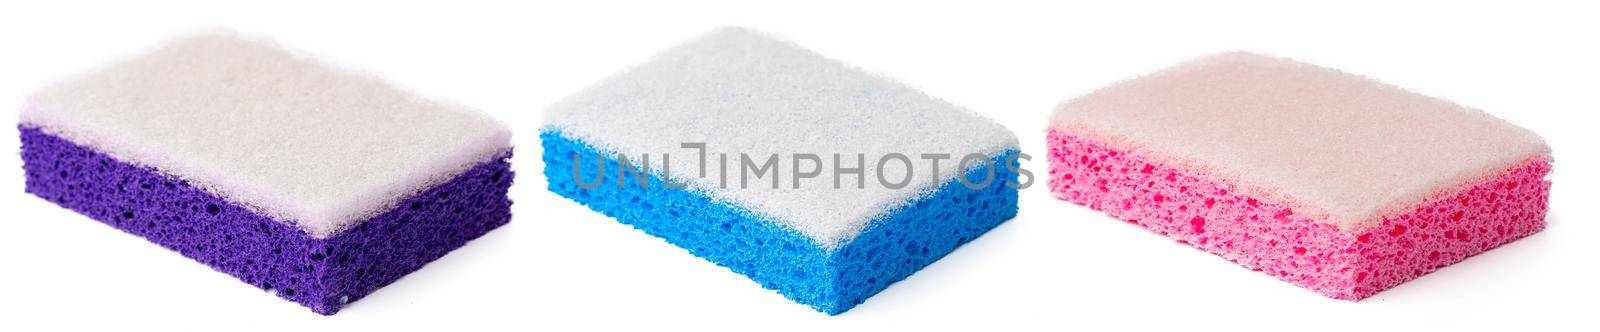 Kitchen sponge for dish washing isolated on white background. by Fabrikasimf